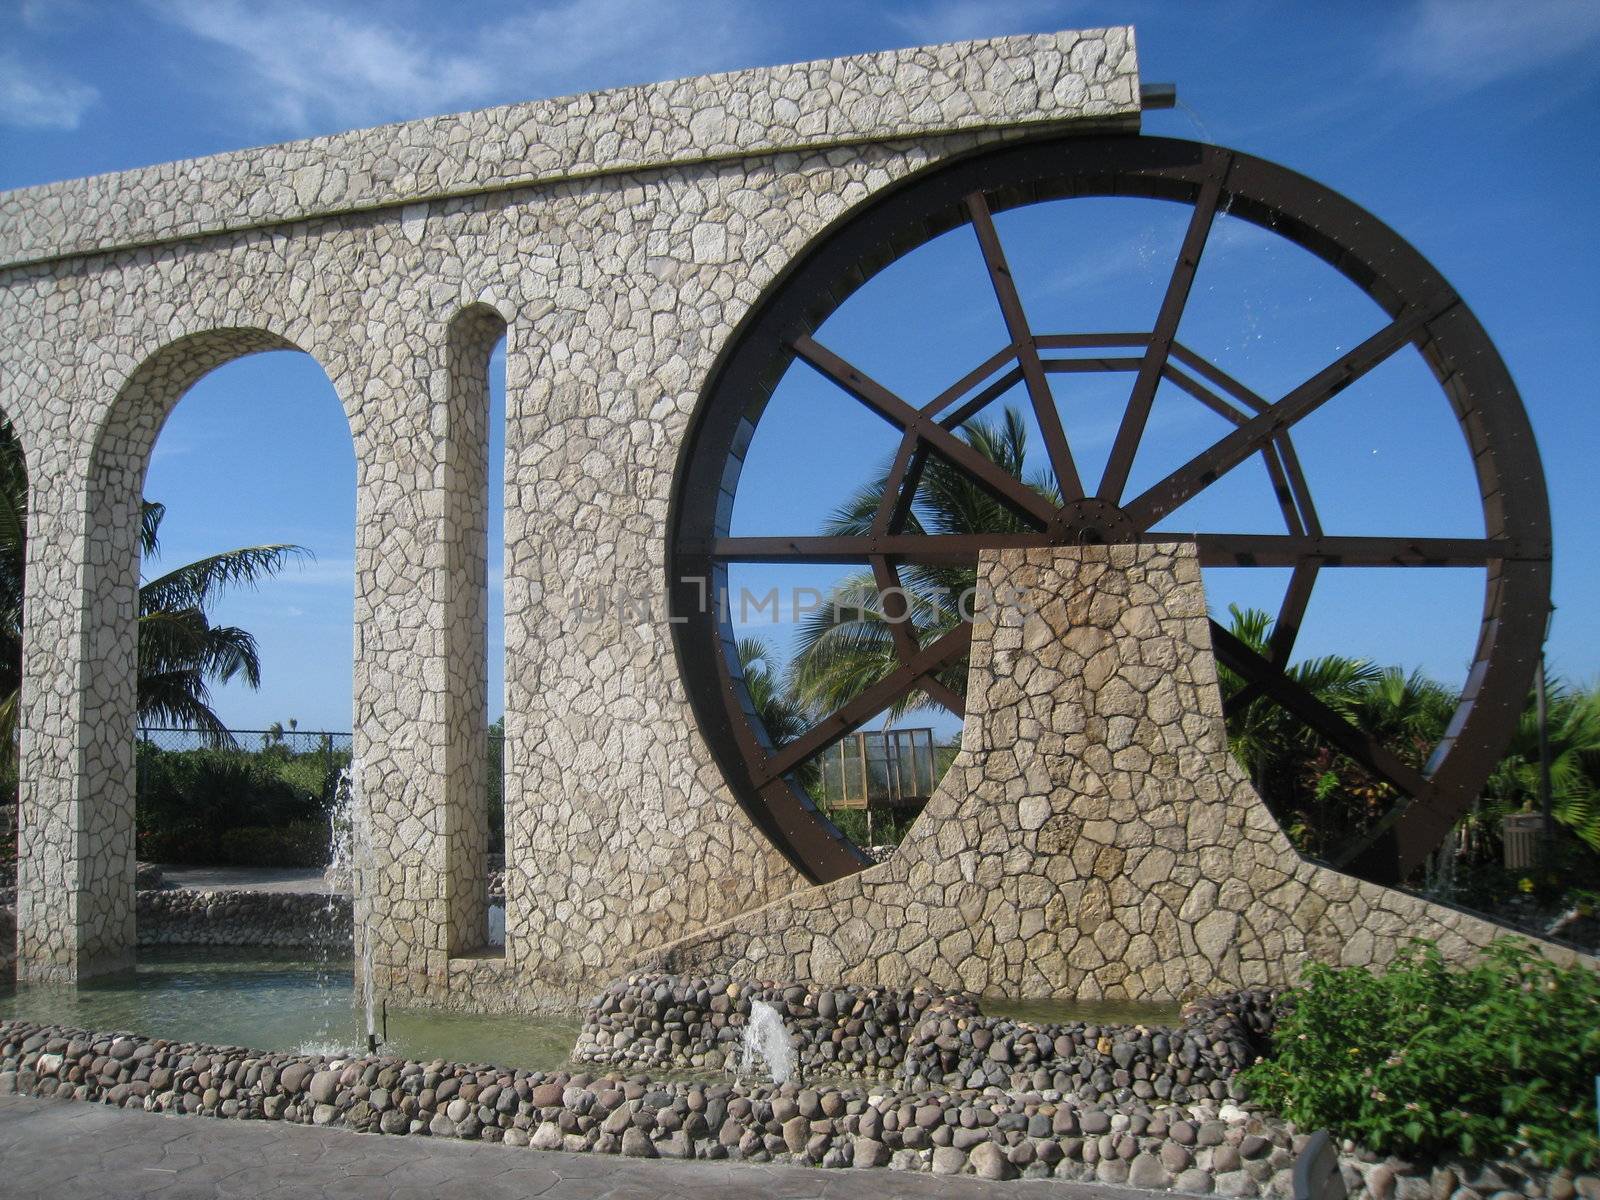 Landmark in Jamaica by sainaniritu